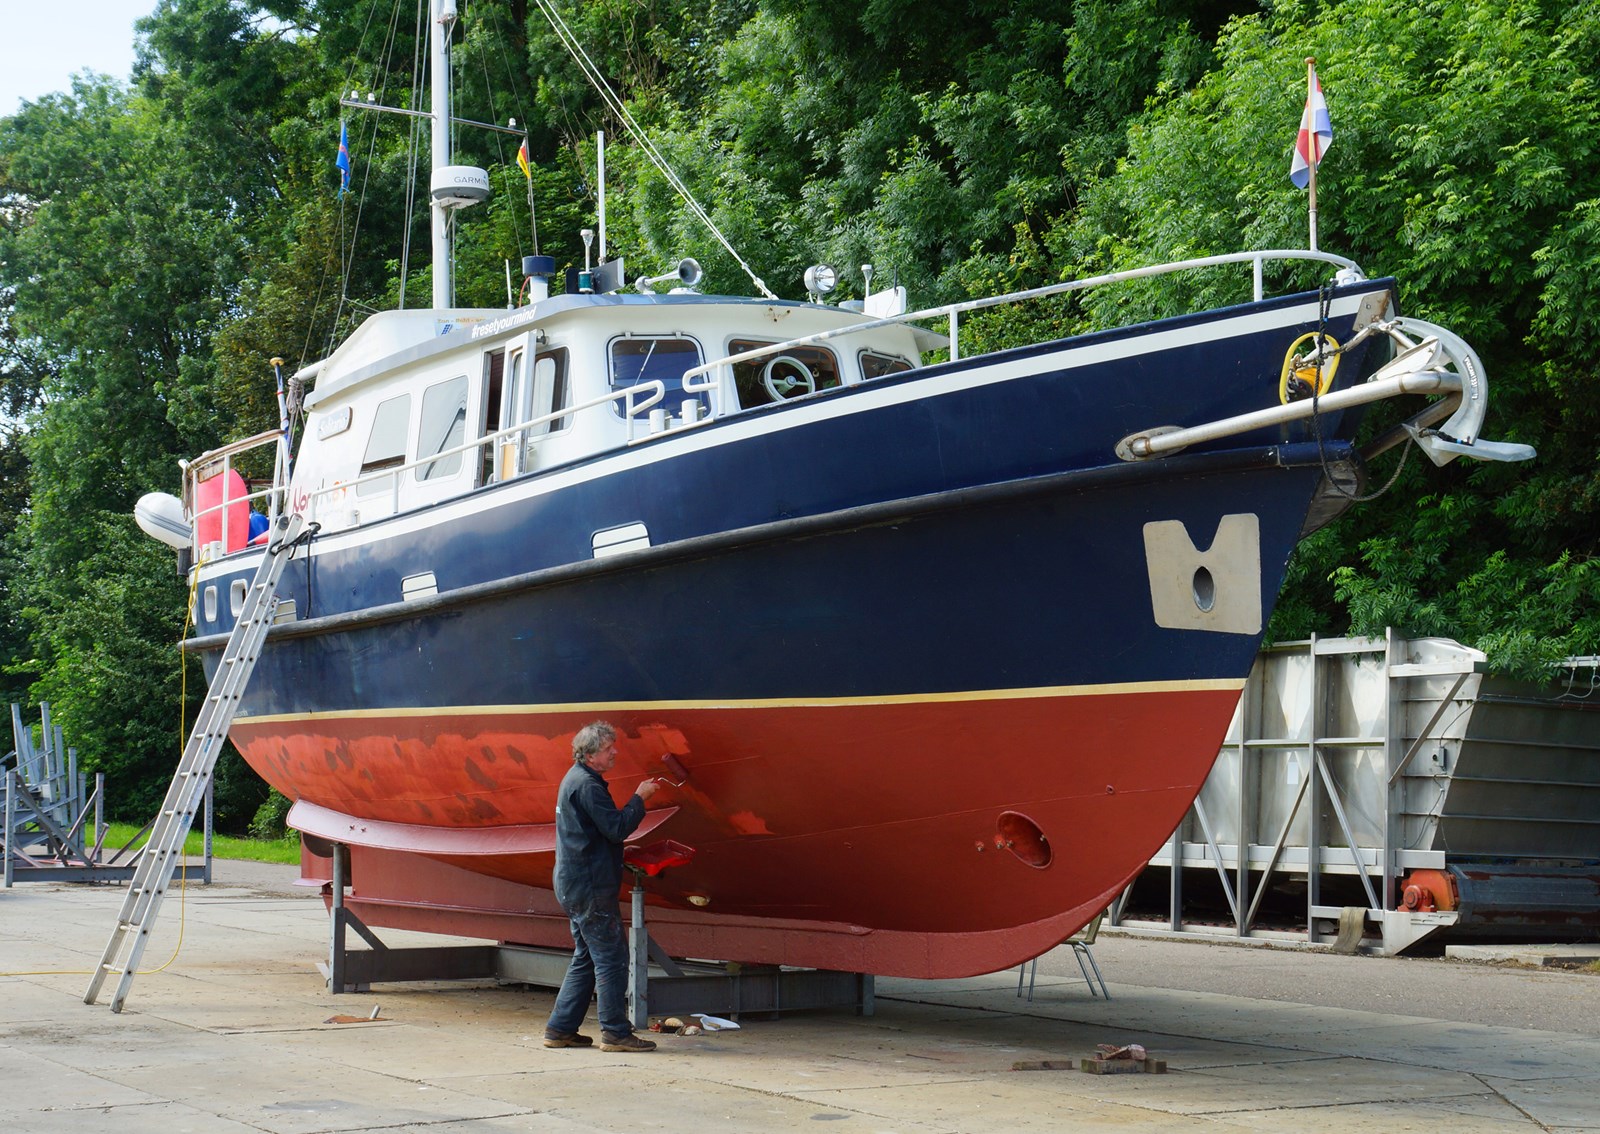 Trouw Downtown geestelijke gezondheid Motorboot wijlen Henk de Velde te koop (= verkocht) - watersport-tv